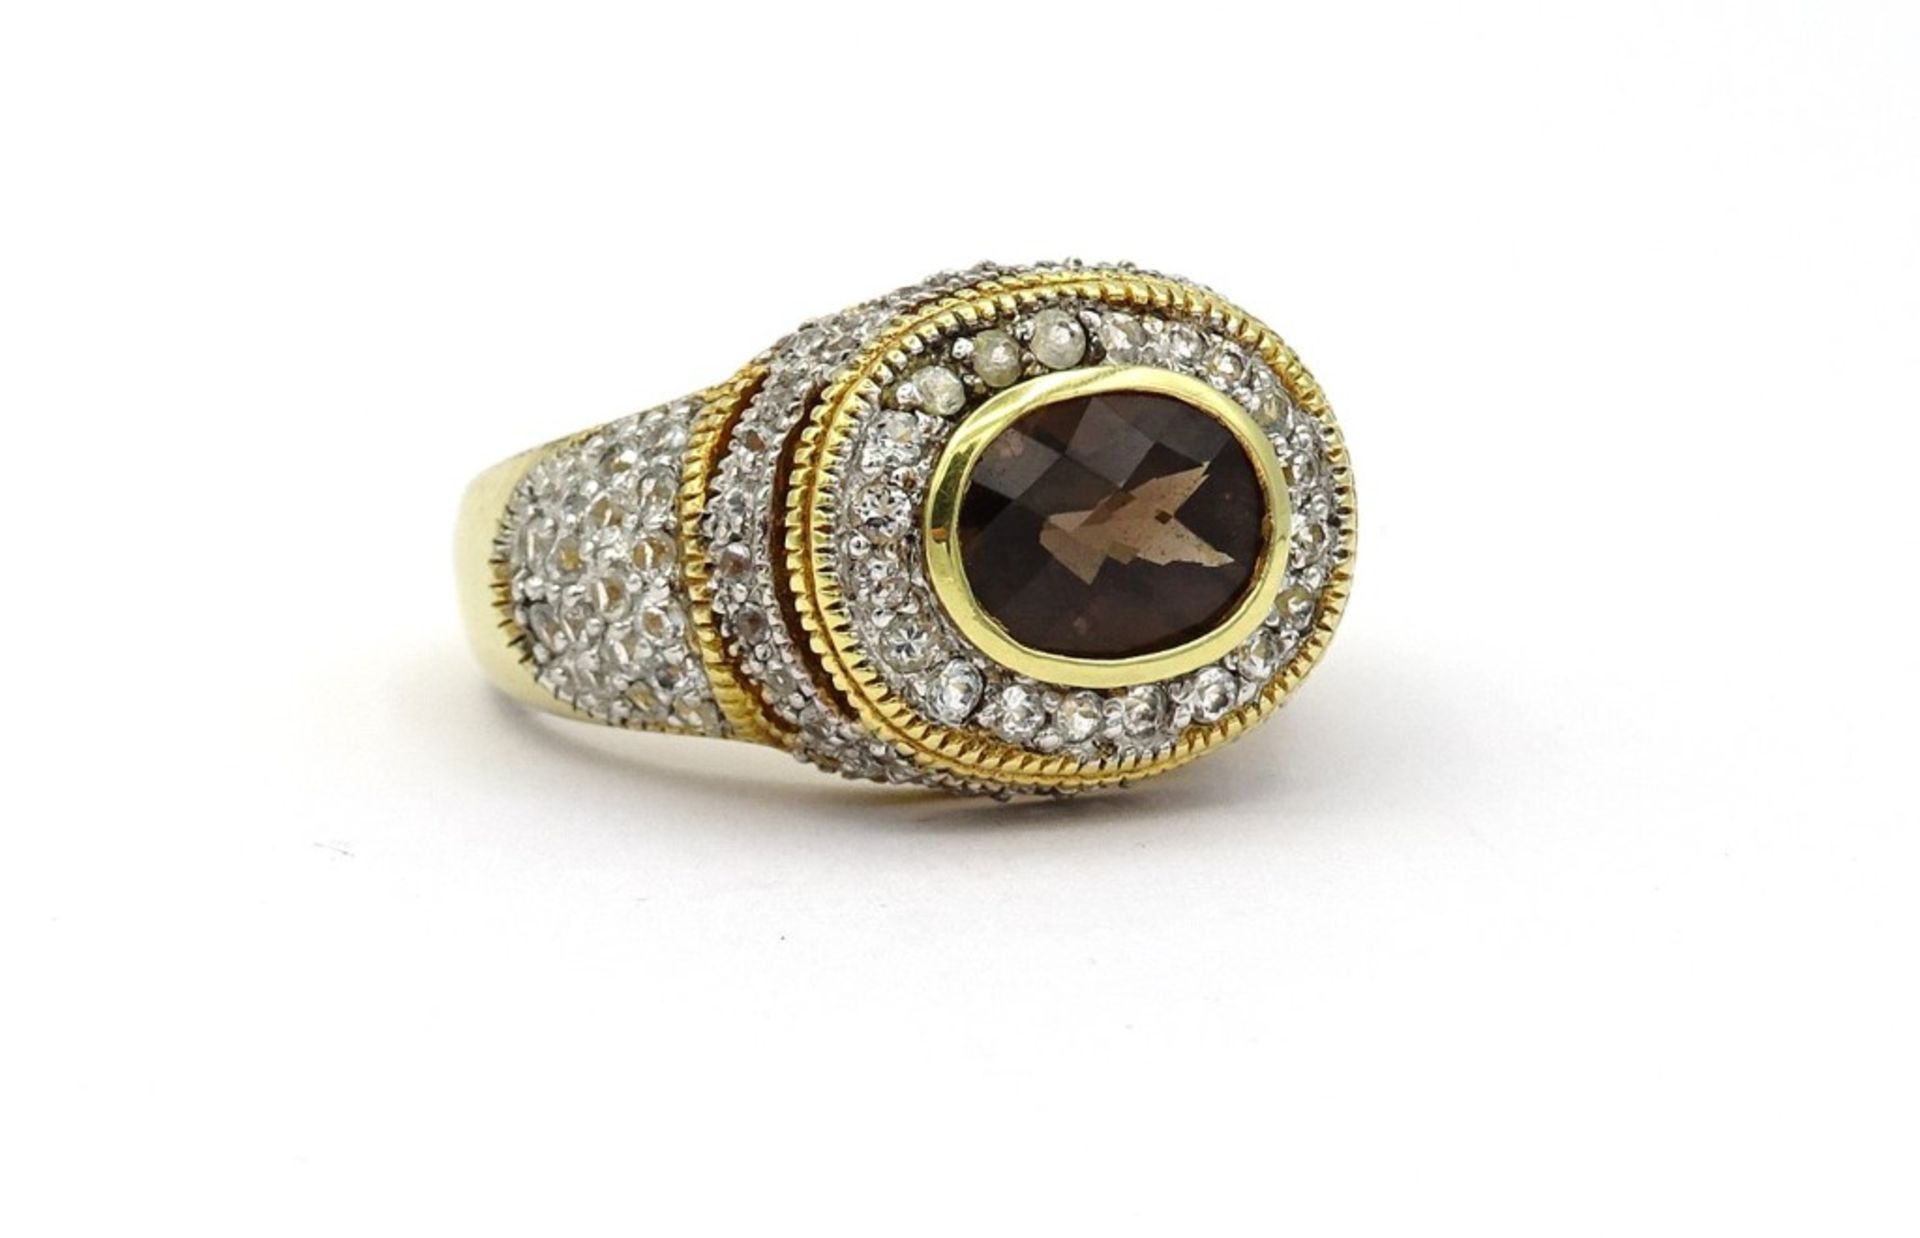 Prachtvoller Silber Ring mit facc.Rauchquarz und rund facc.klaren Steinen,Silber-vergoldet, 925/000,